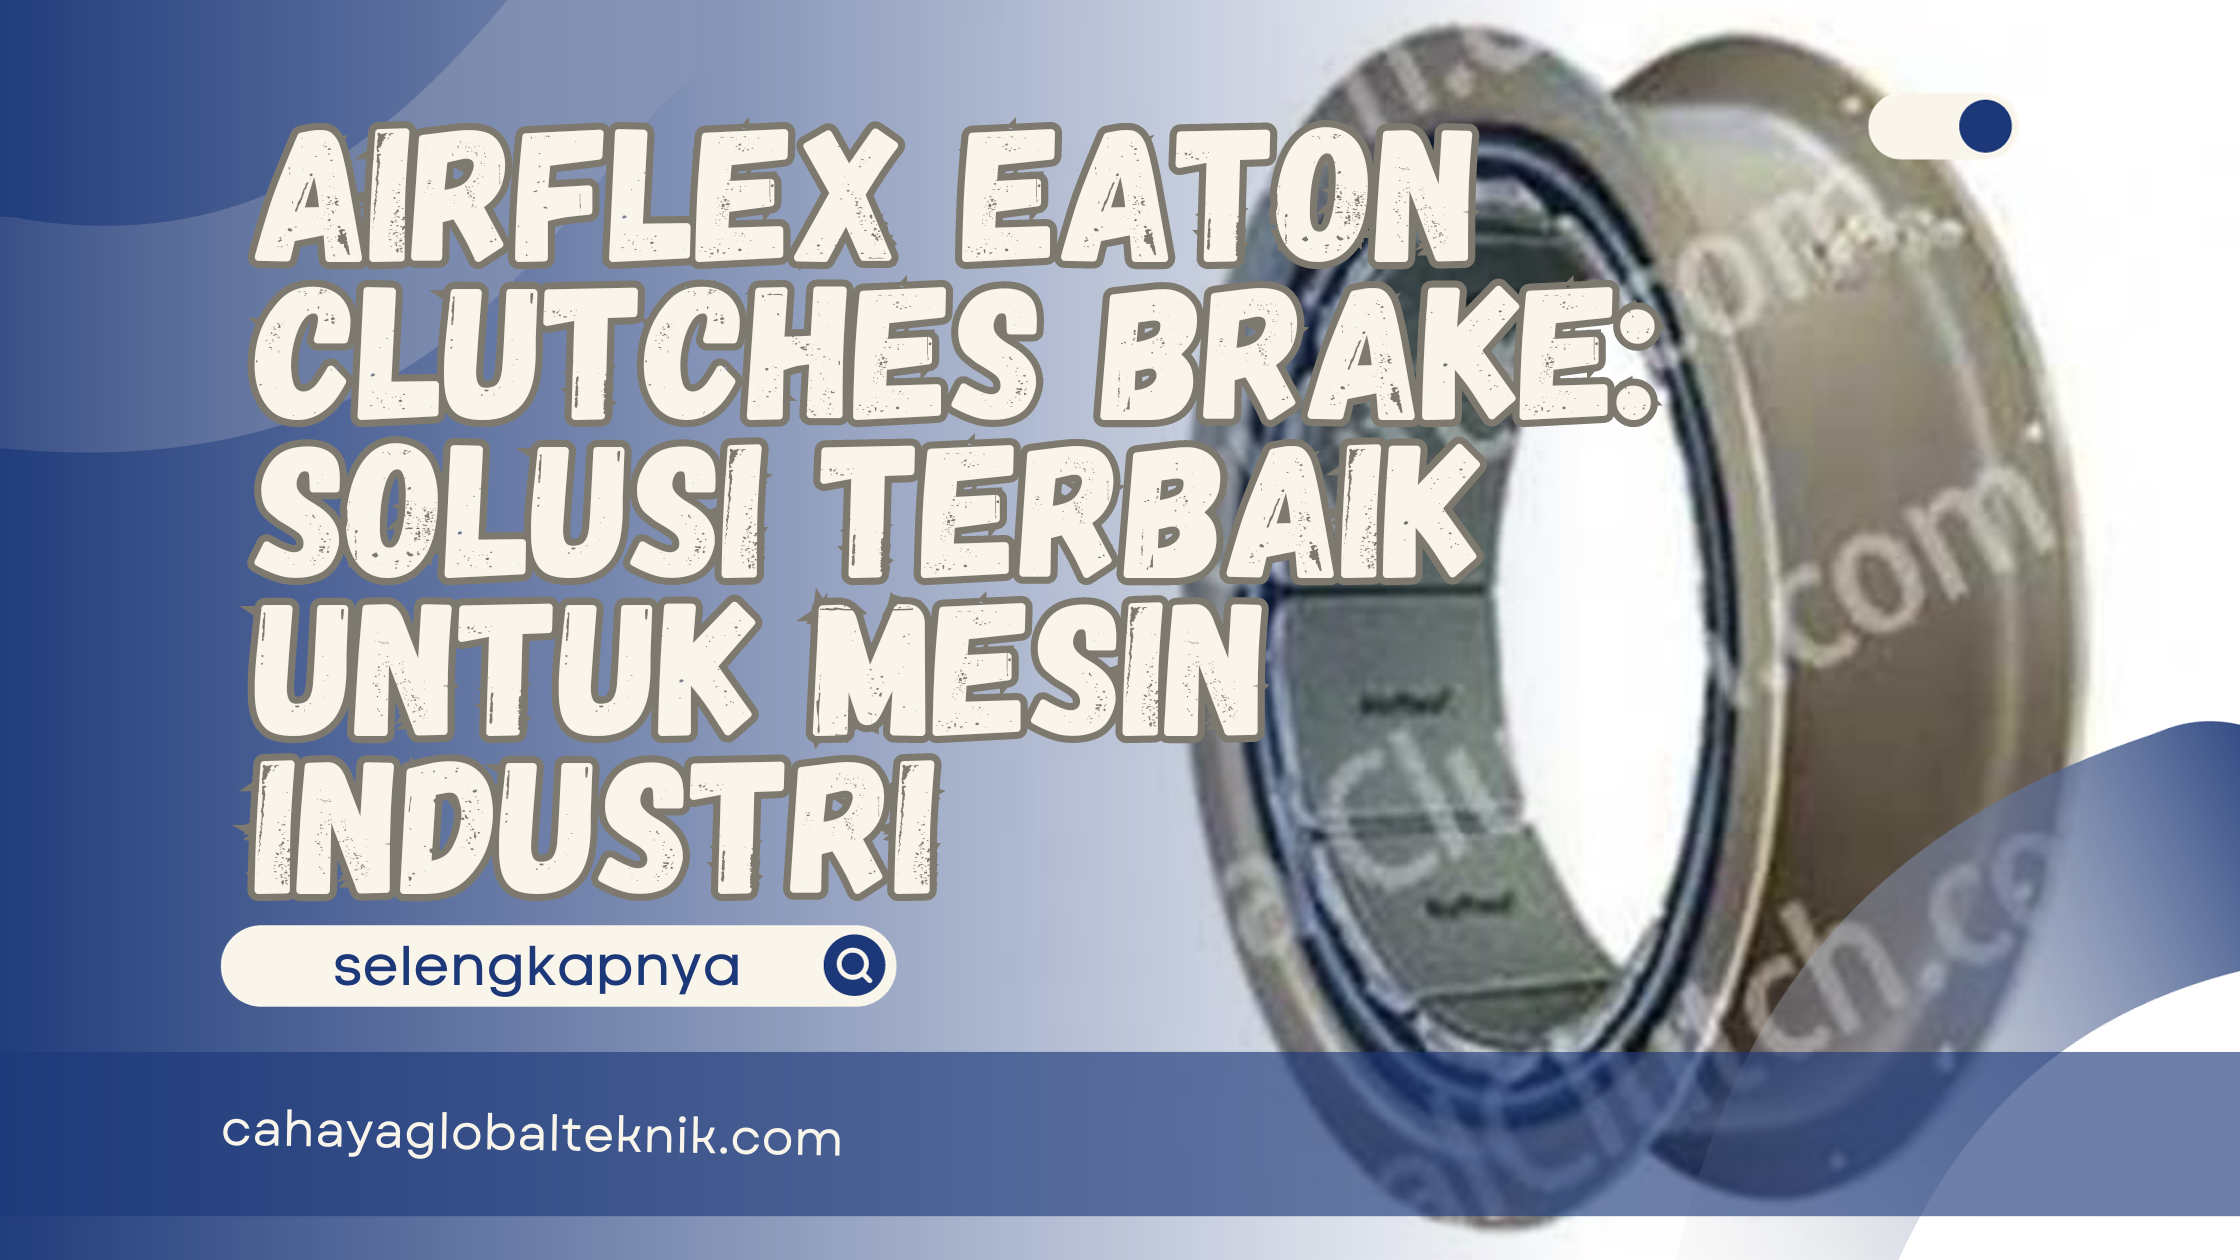 Airflex Eaton Clutches Brake: Solusi Terbaik untuk Mesin Industri